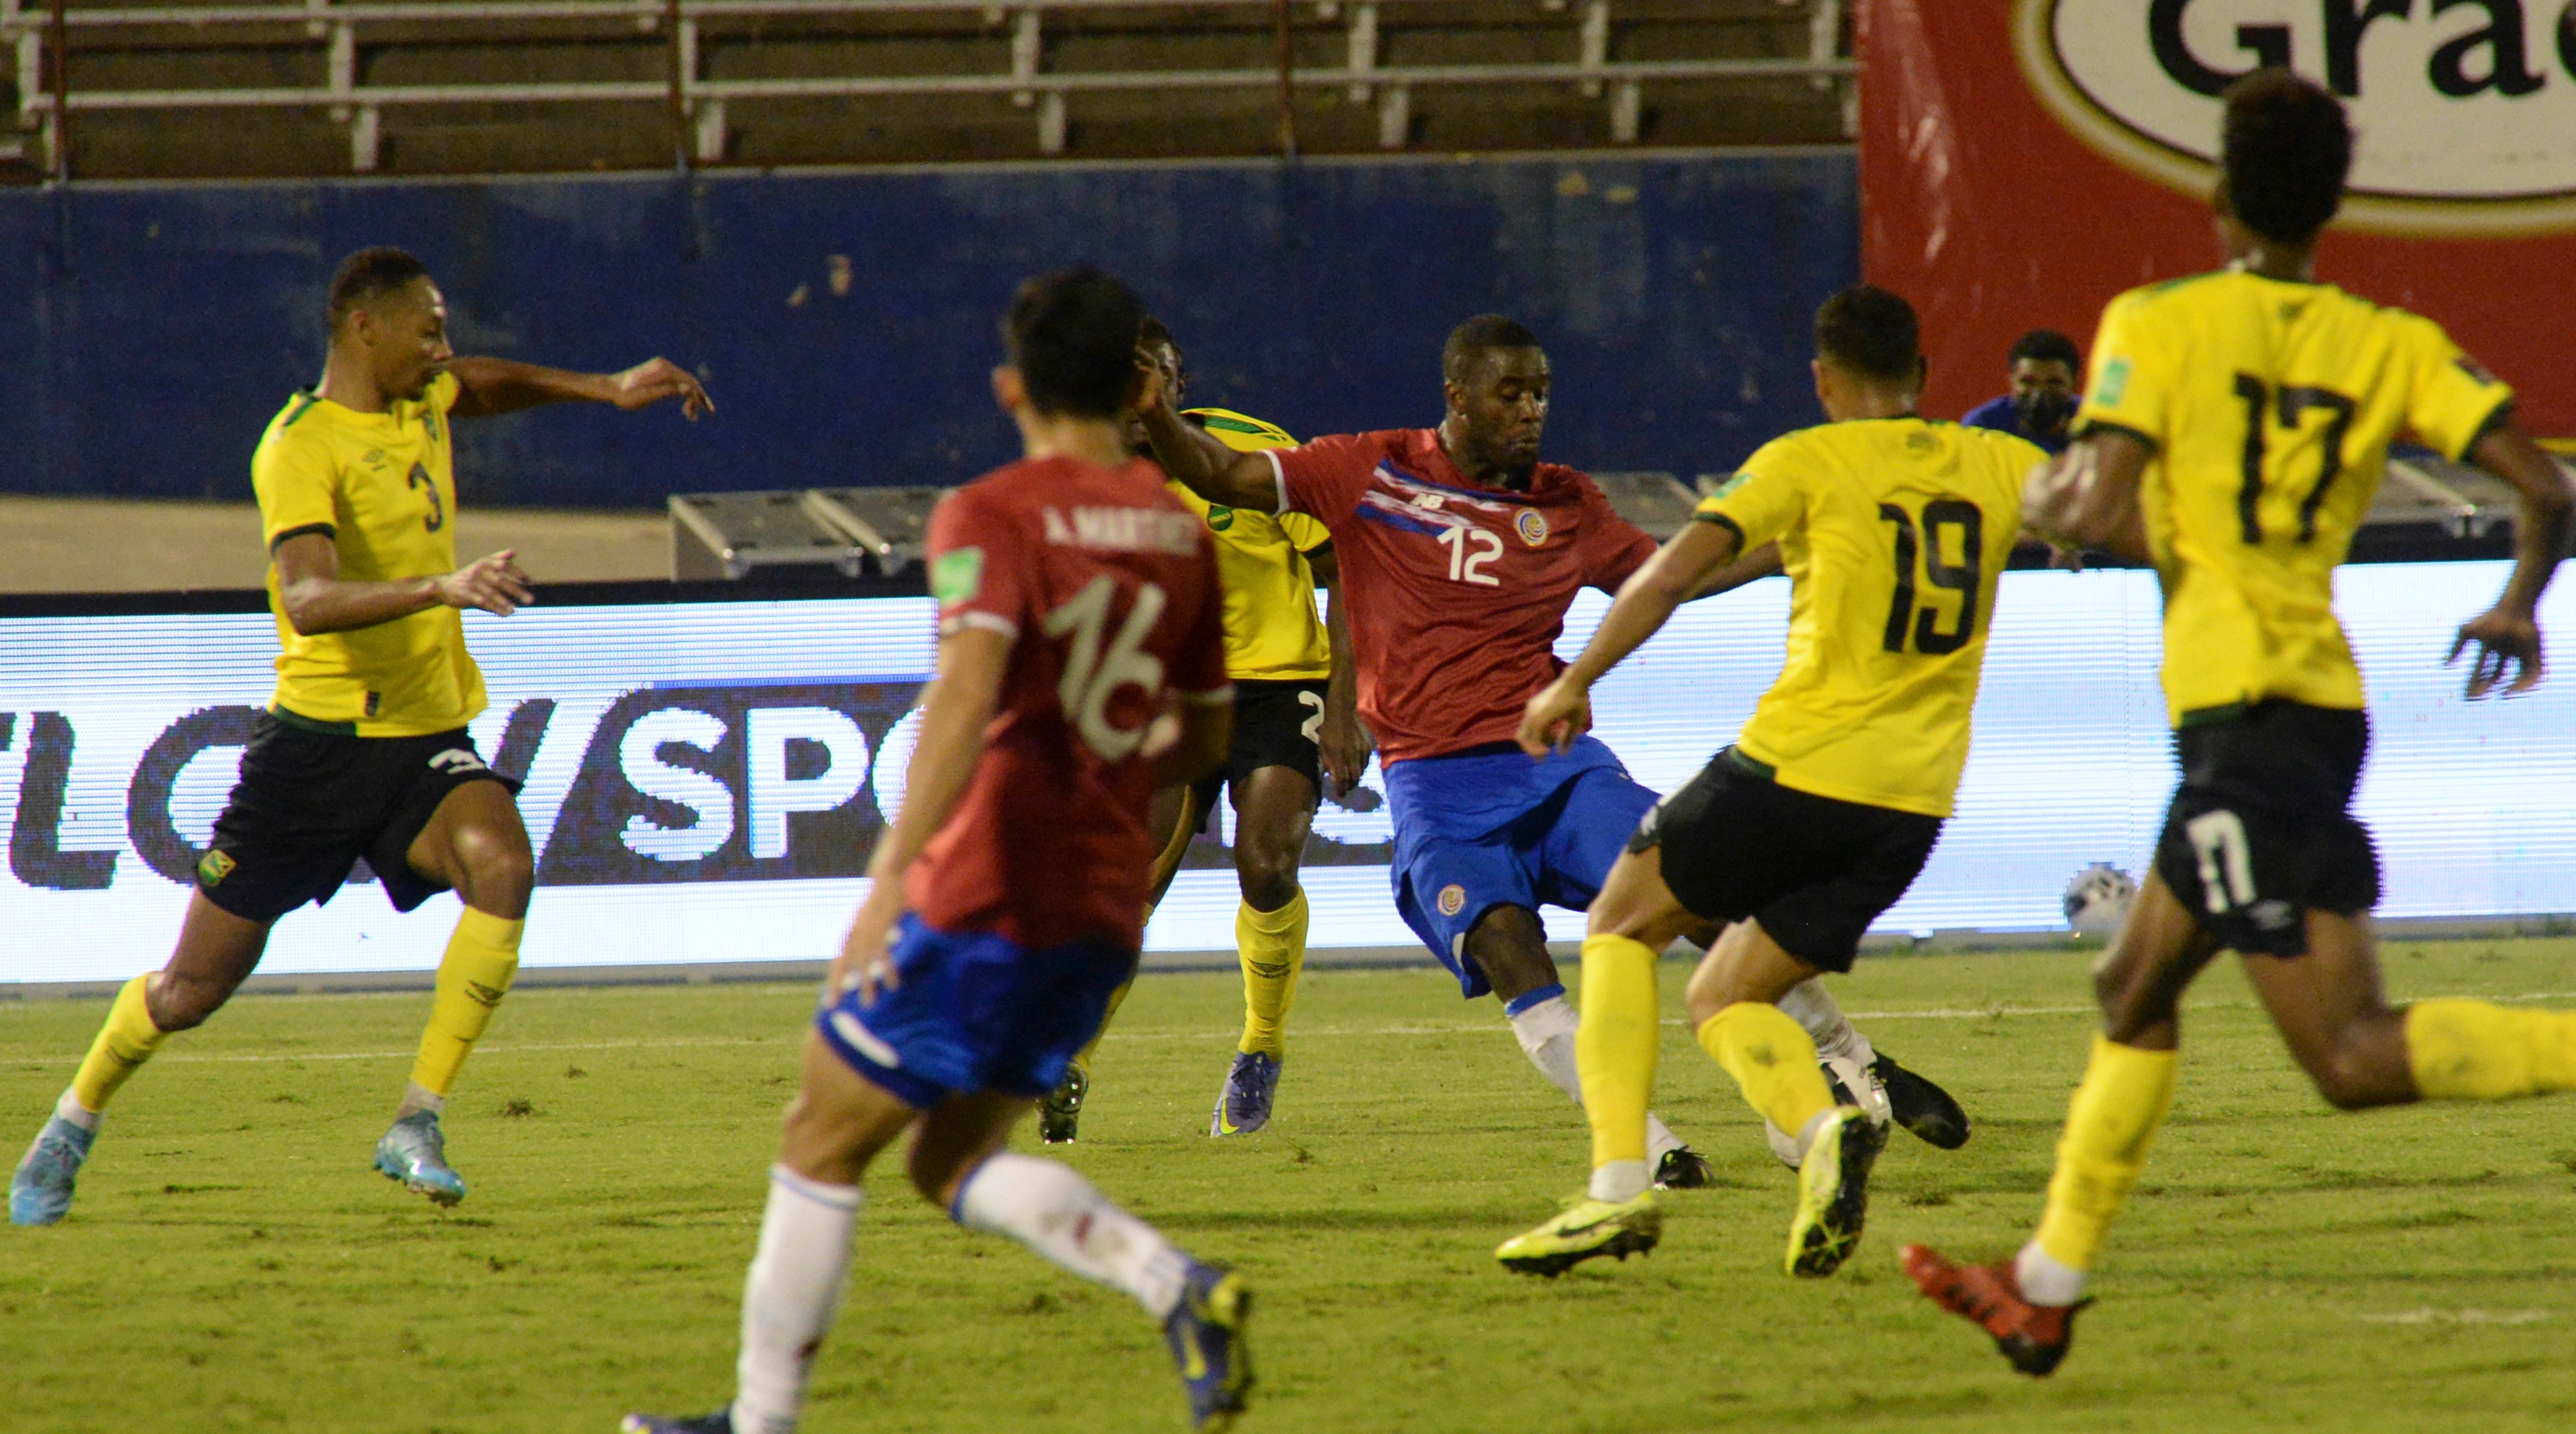 Disputas en Costa Rica reportan que jugó eliminatorias mundialistas con jugadores positivos a COVID-19